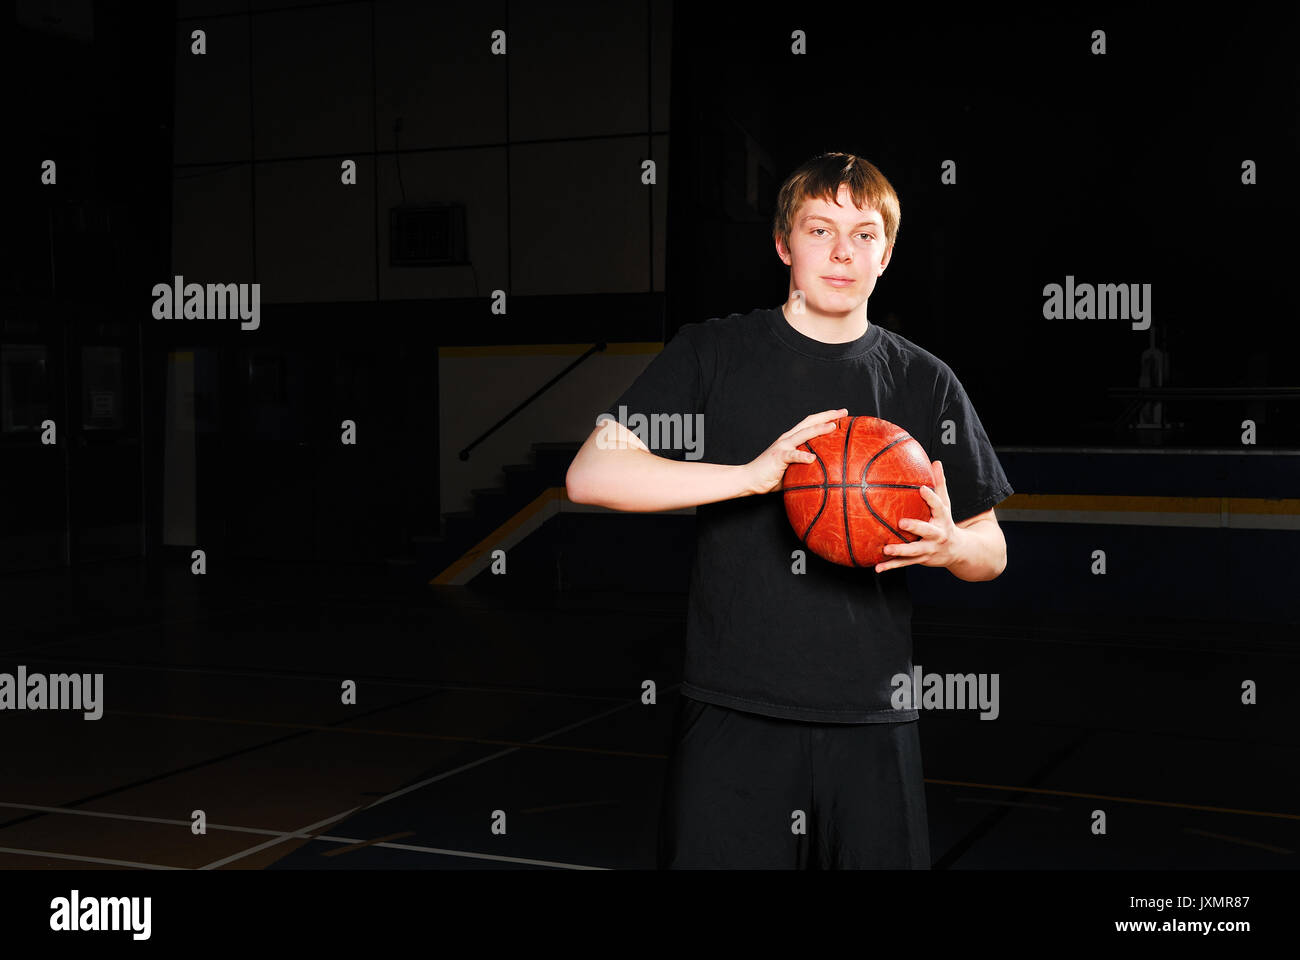 El jugador de baloncesto solo en un gimnasio de highschool oscuro Foto de stock